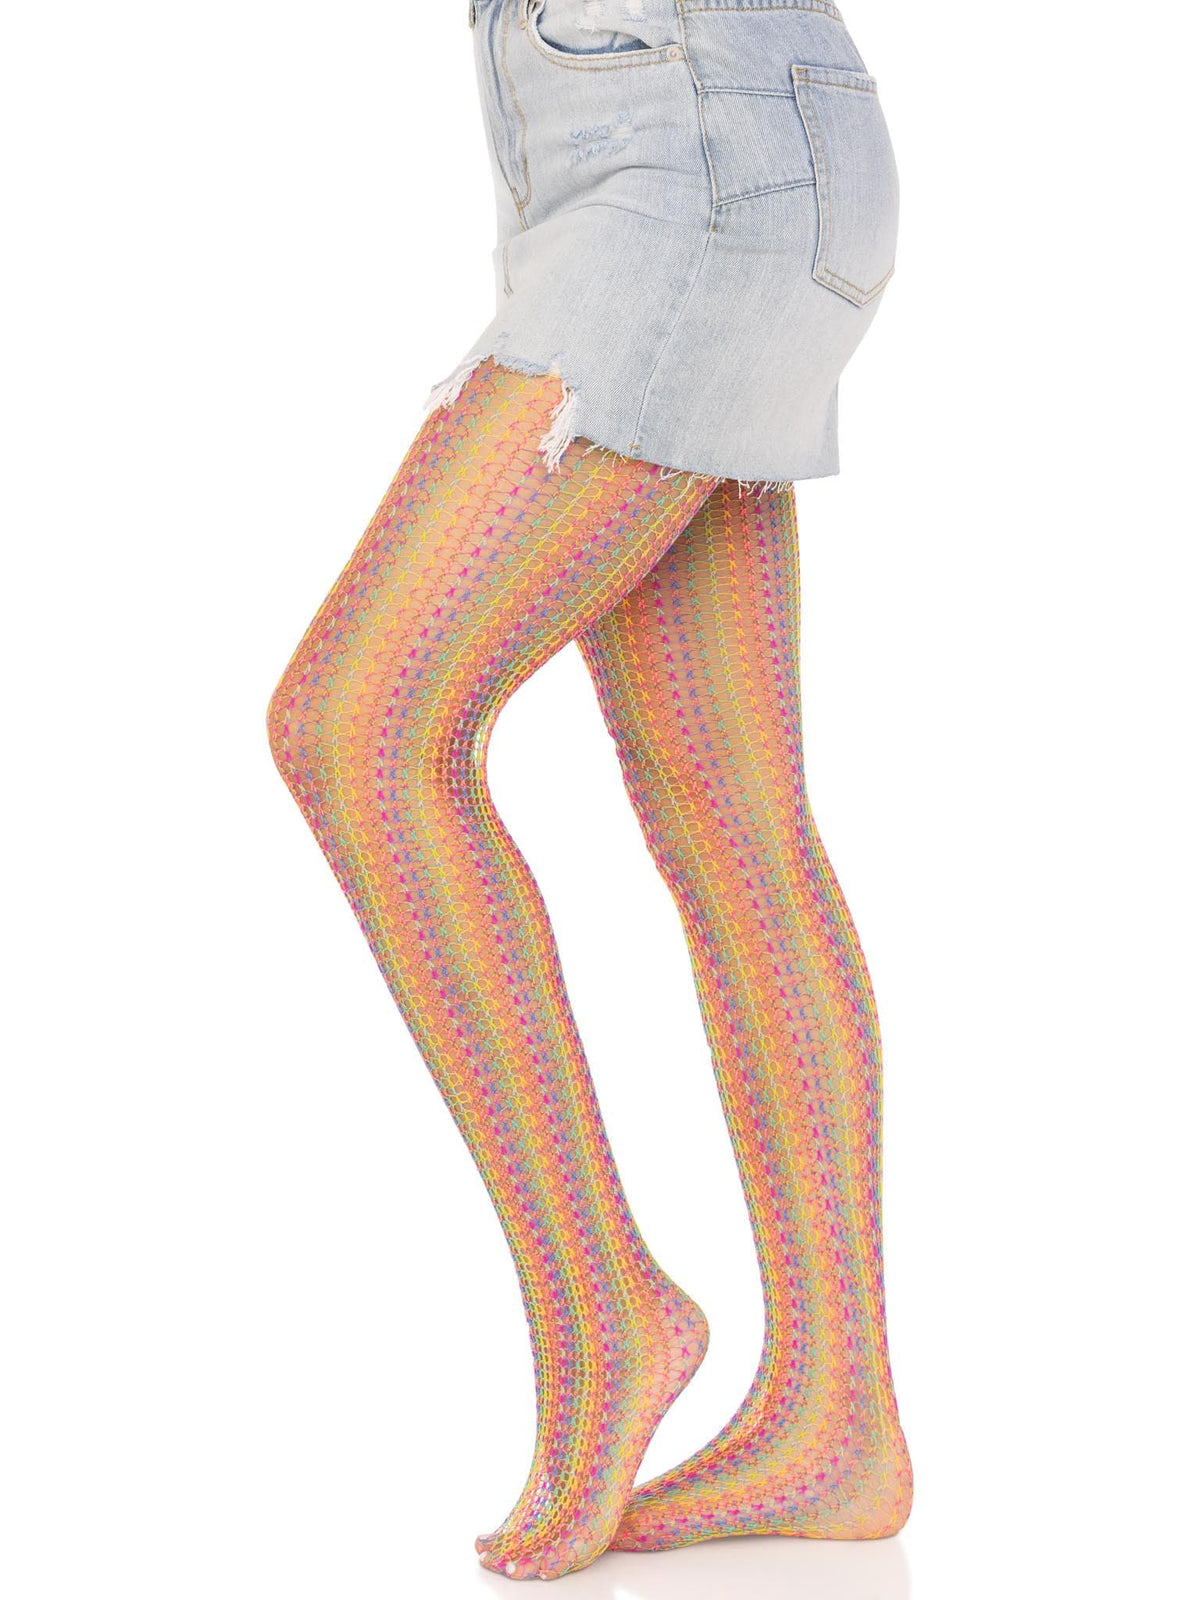 Medias de red de crochet arcoíris - Talla única - Multicolor